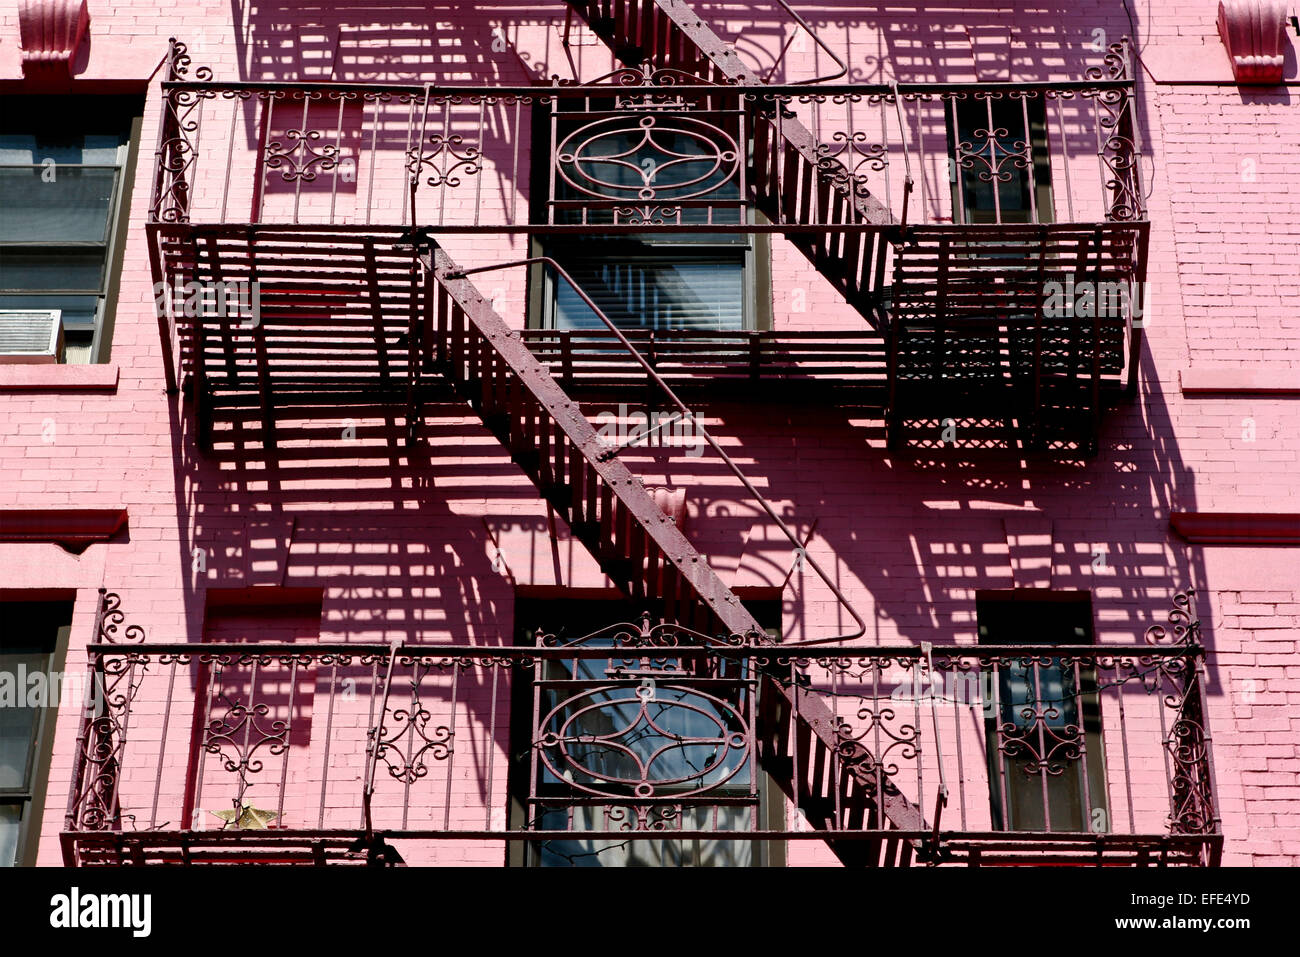 Fassade eines rosa Gebäudes mit Nottreppe mit Handlauf, Leitern Feuertreppe. Soho, Manhattan, New York City, NY, Vereinigte Staaten von Amerika, USA Stockfoto